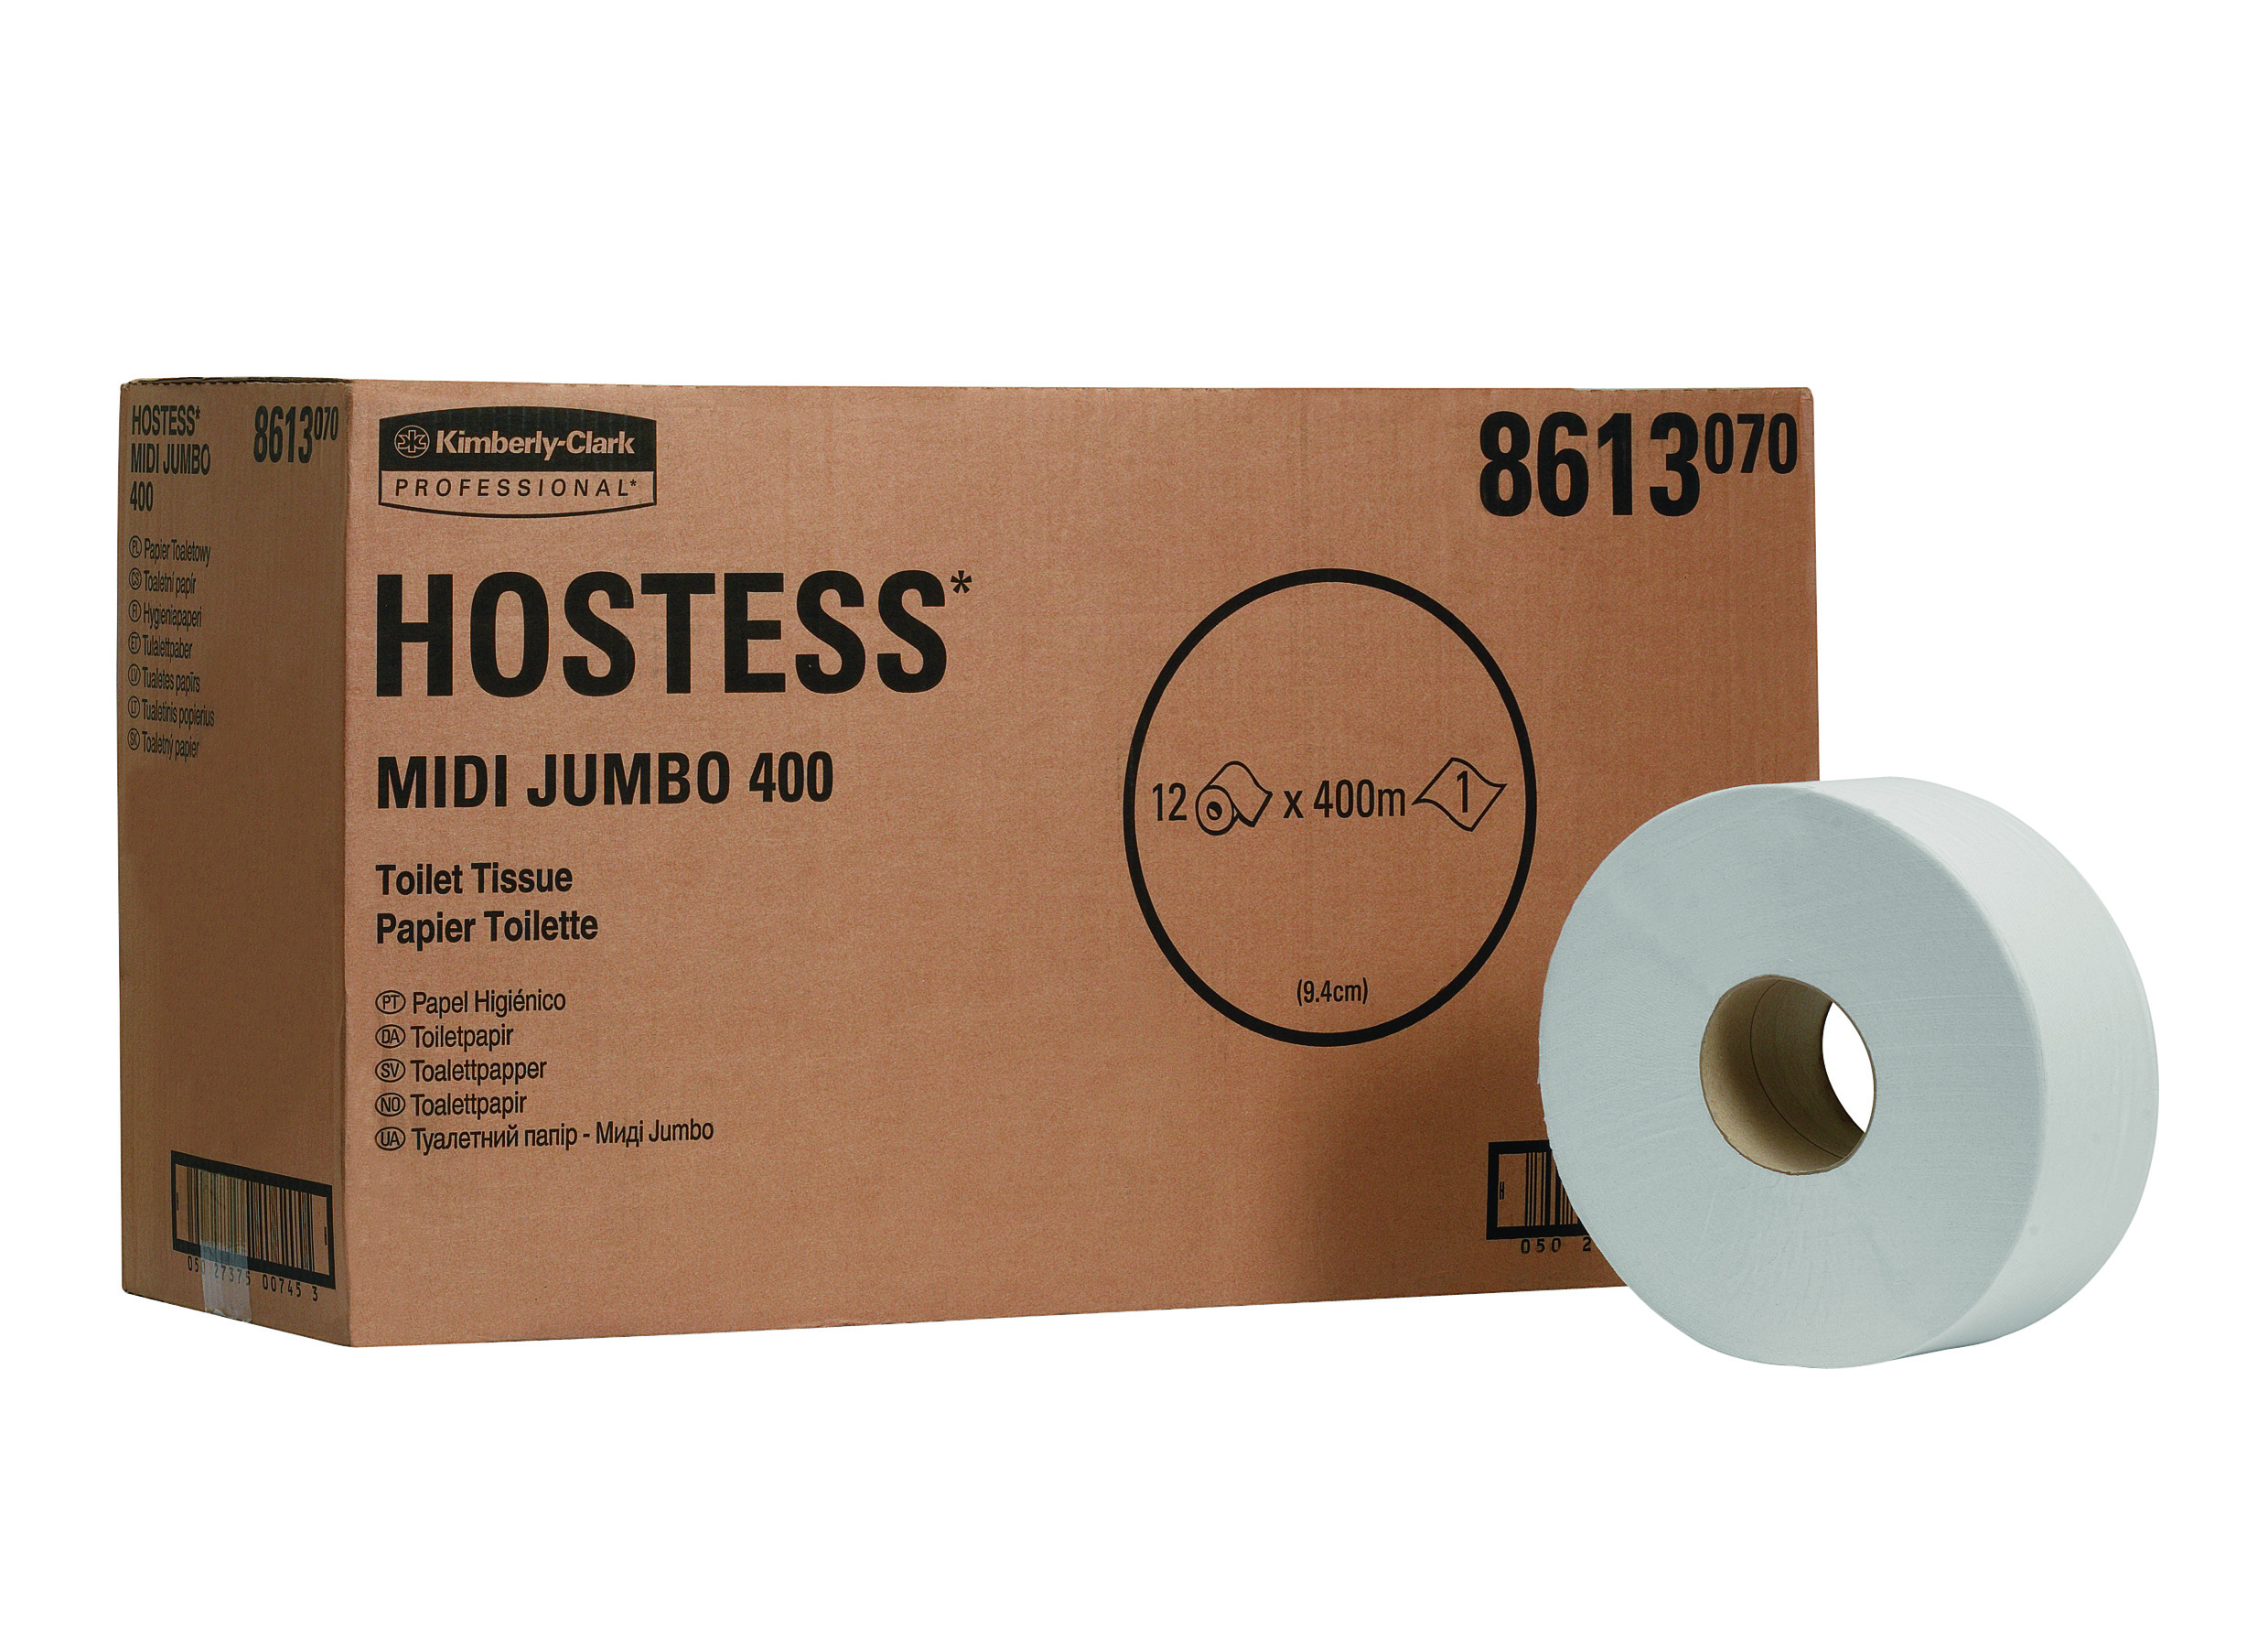 HOSTESS* Toilettissue Rollen Jumbo 400M 8613 Wit - Kimberly Clark